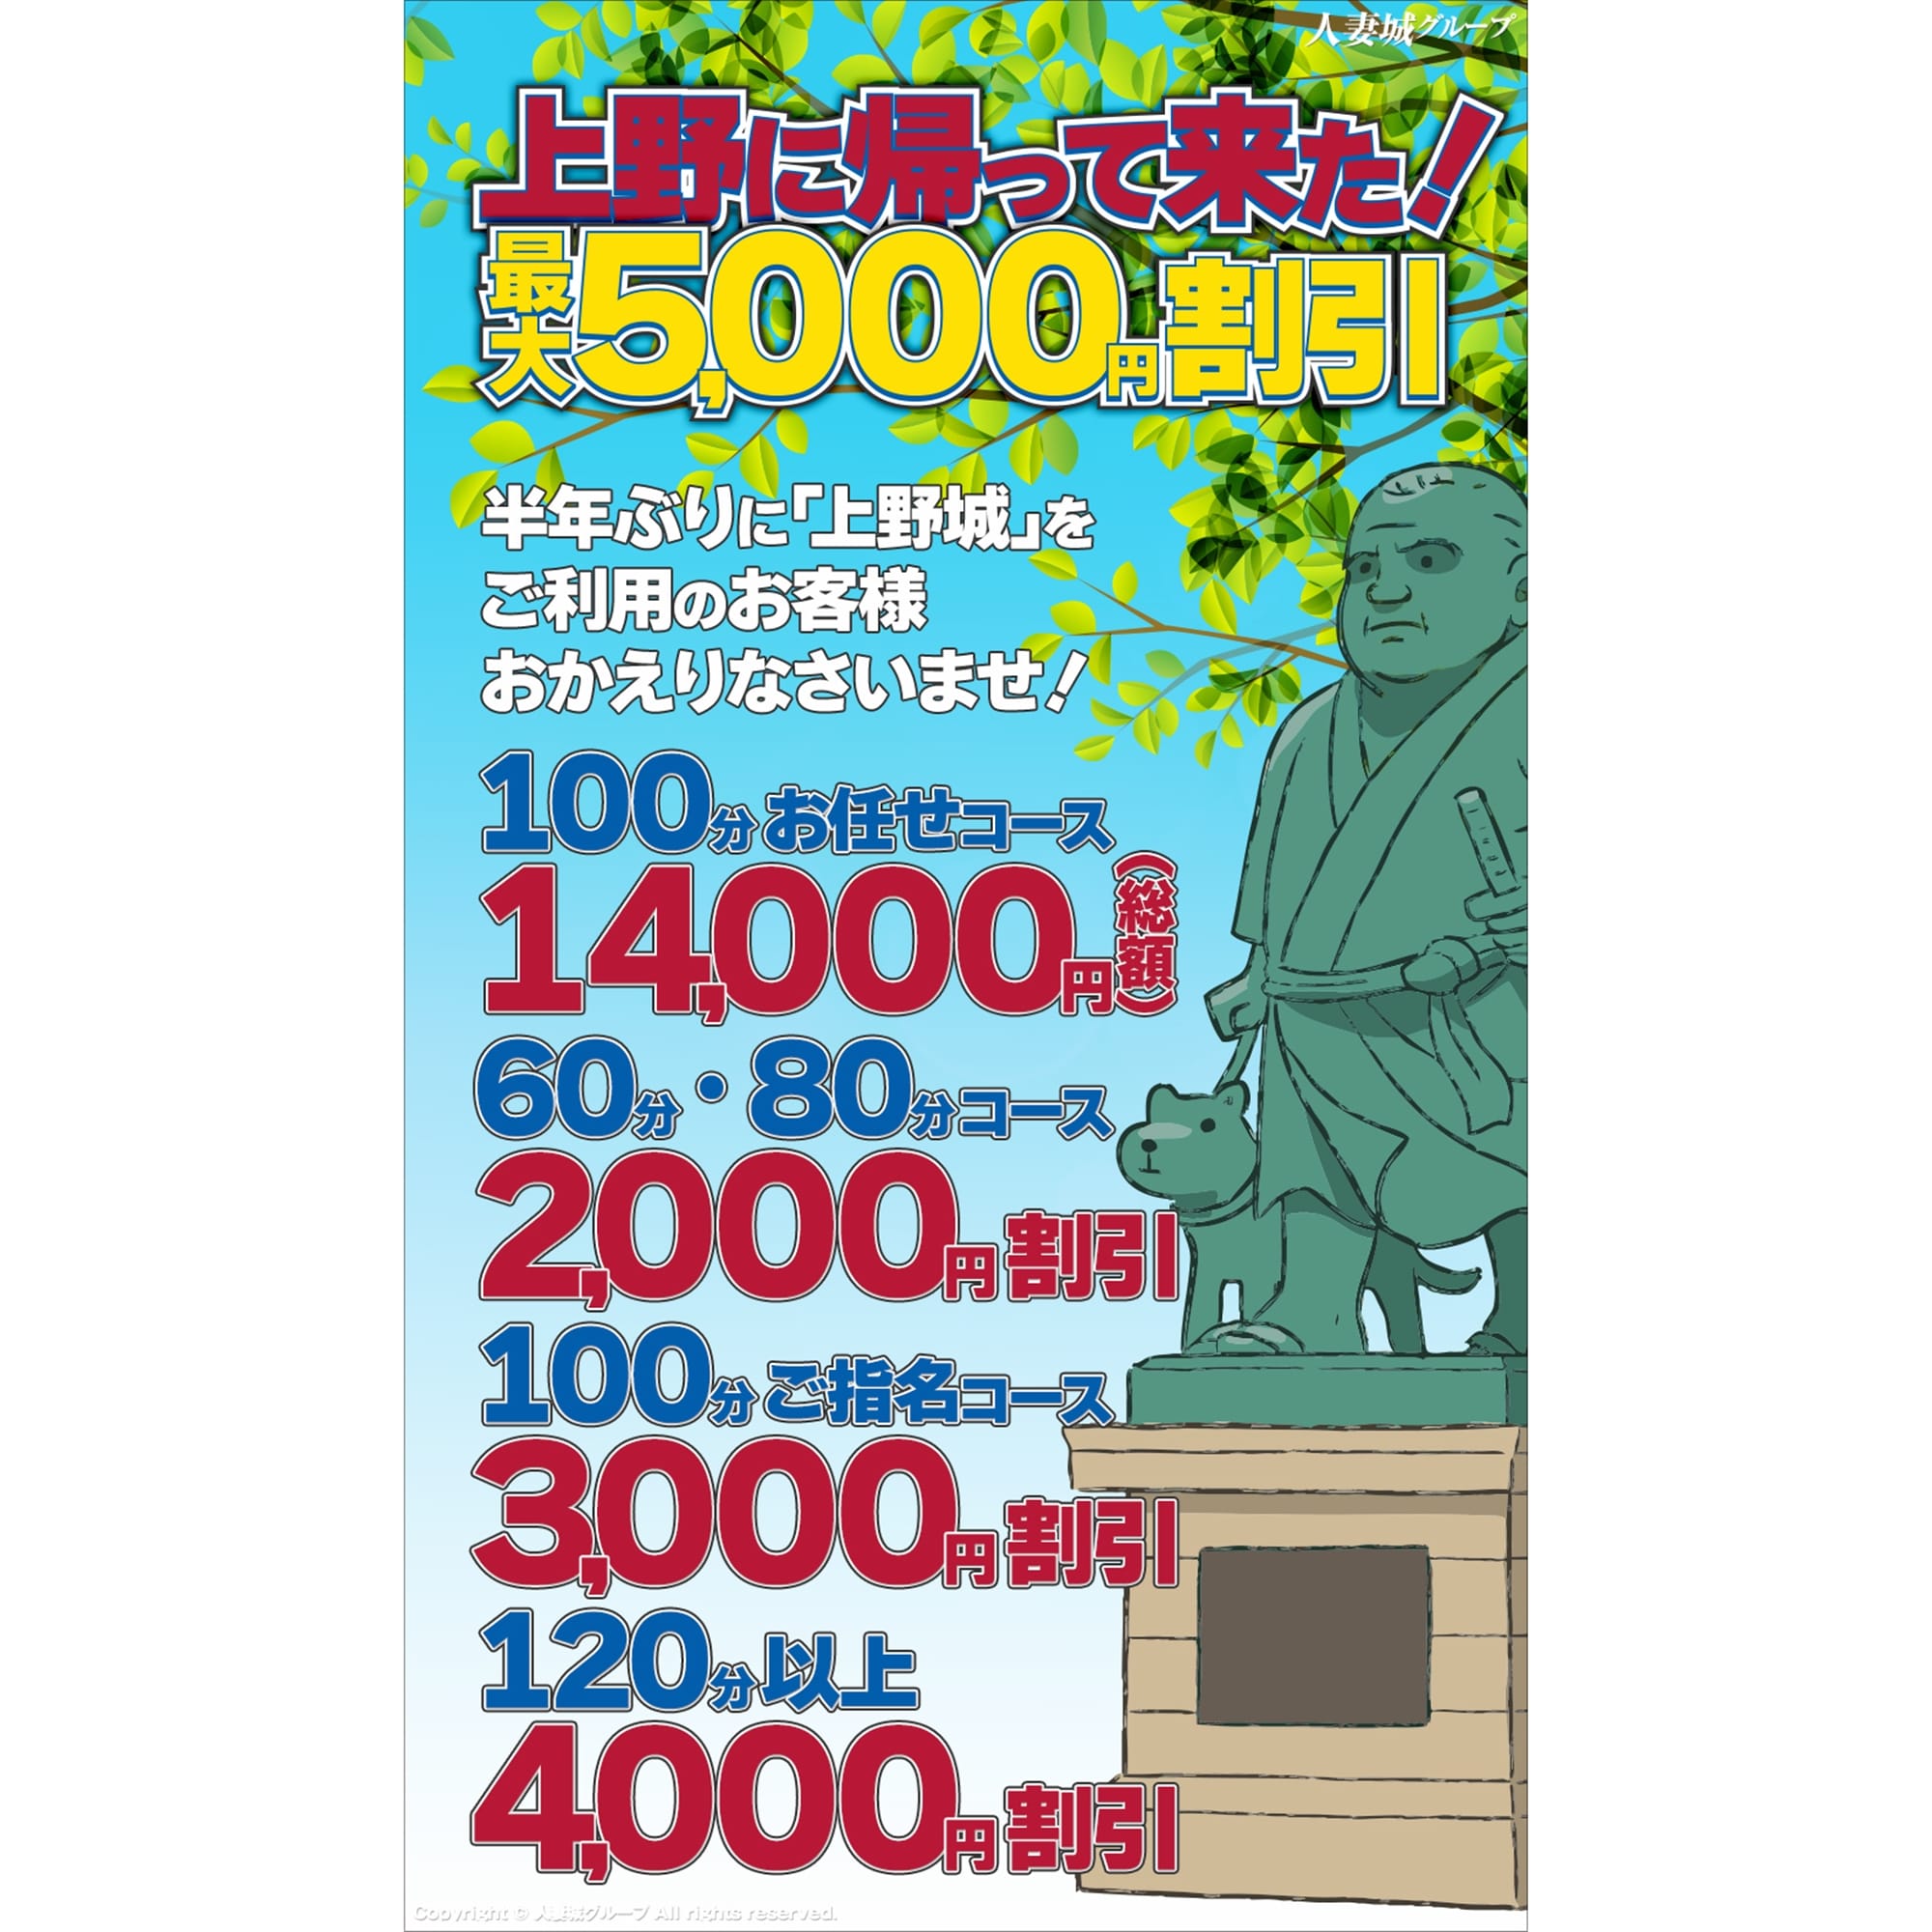 「上野に帰って来た!」04/18(木) 12:55 | 上野人妻城のお得なニュース